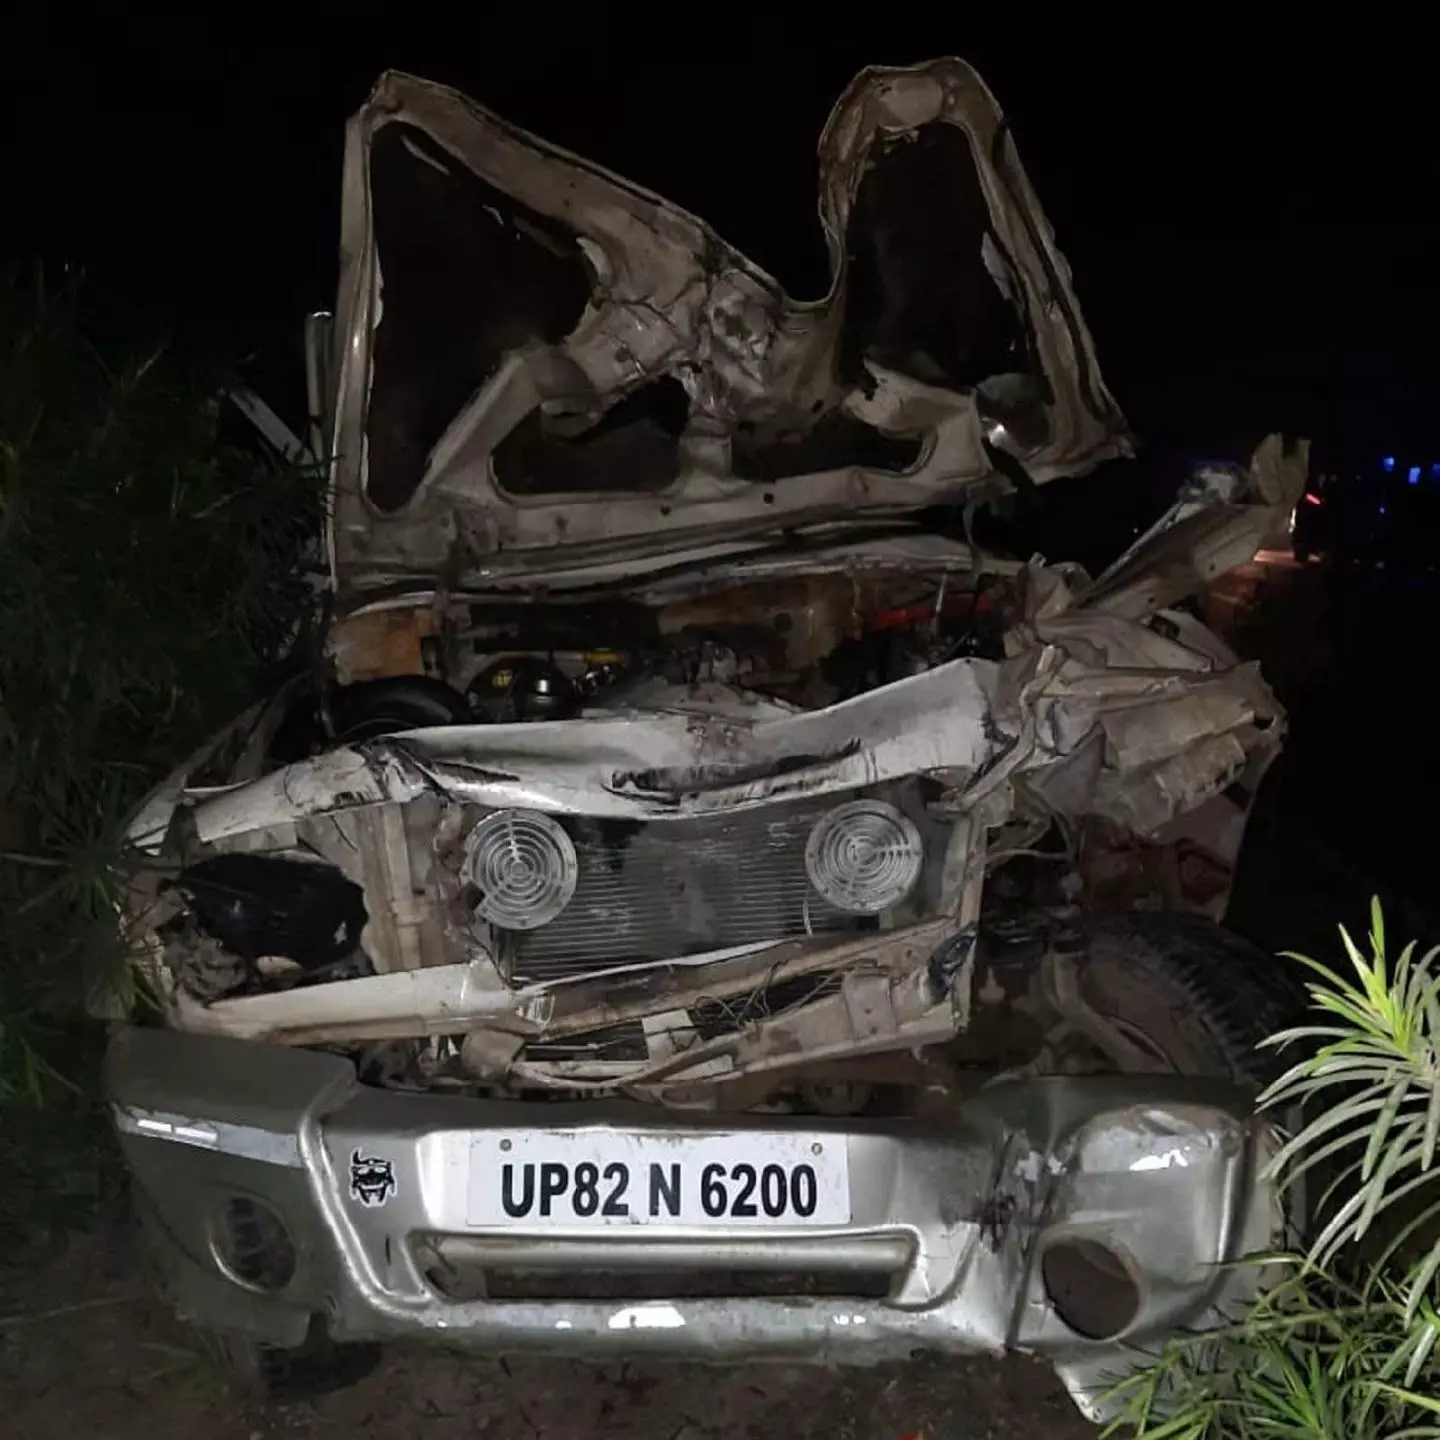 Road Accident in Basti: बस्ती में भीषण सड़क हादसा, ड्यूटी पर जा रहे सीआरपीएफ के तीन जवानों की मौत।